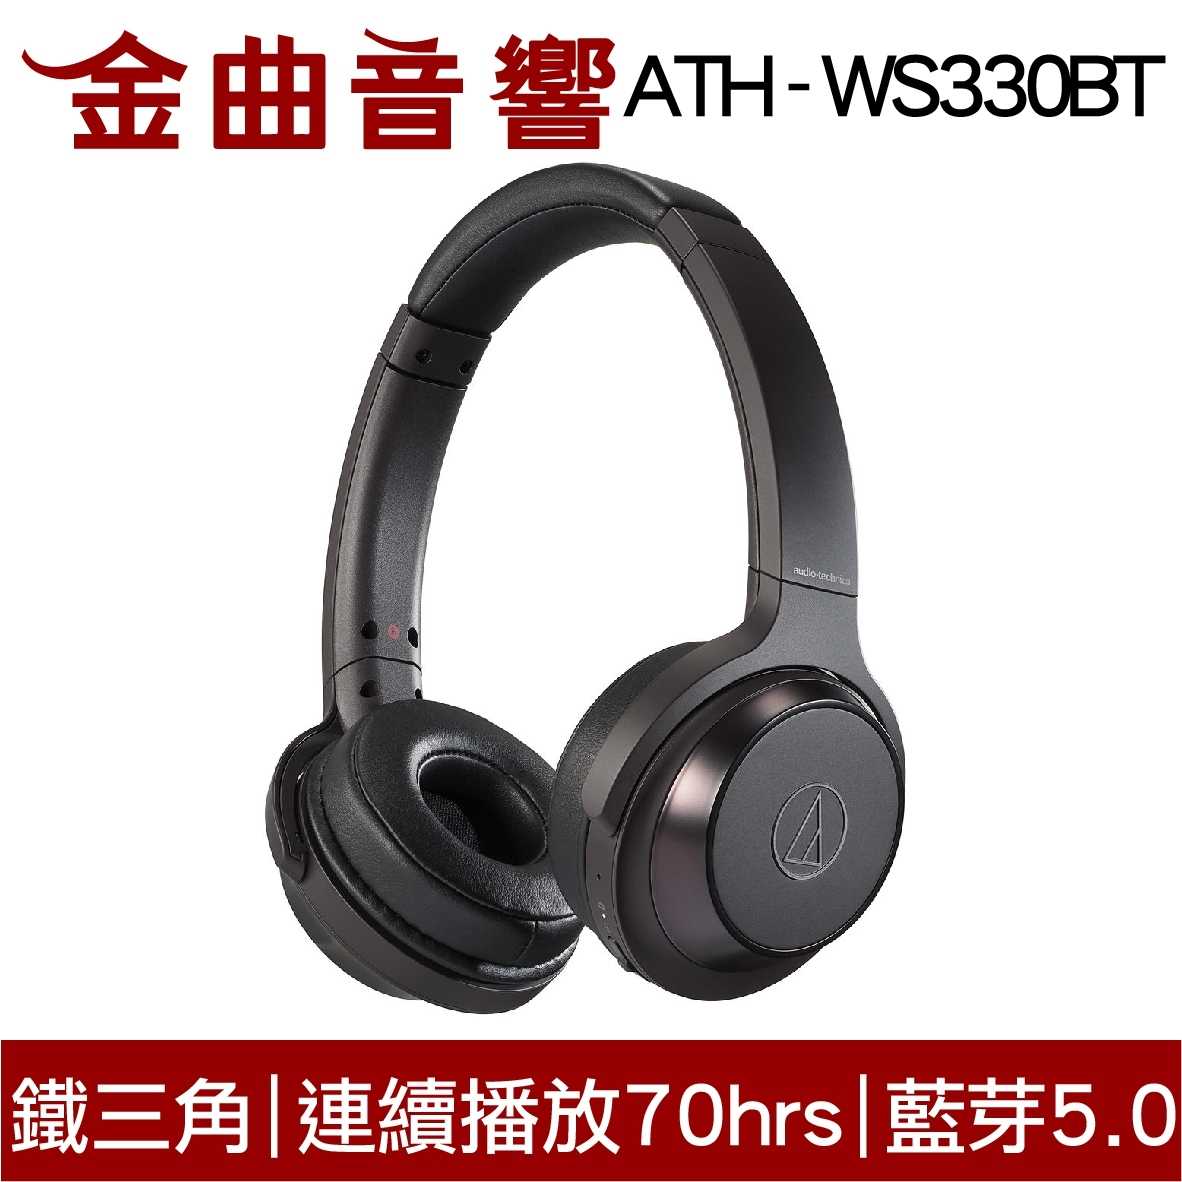 鐵三角 ATH-WS330BT 兒童耳機 大人 皆適用 無線藍牙耳機 重低音 | 金曲音響